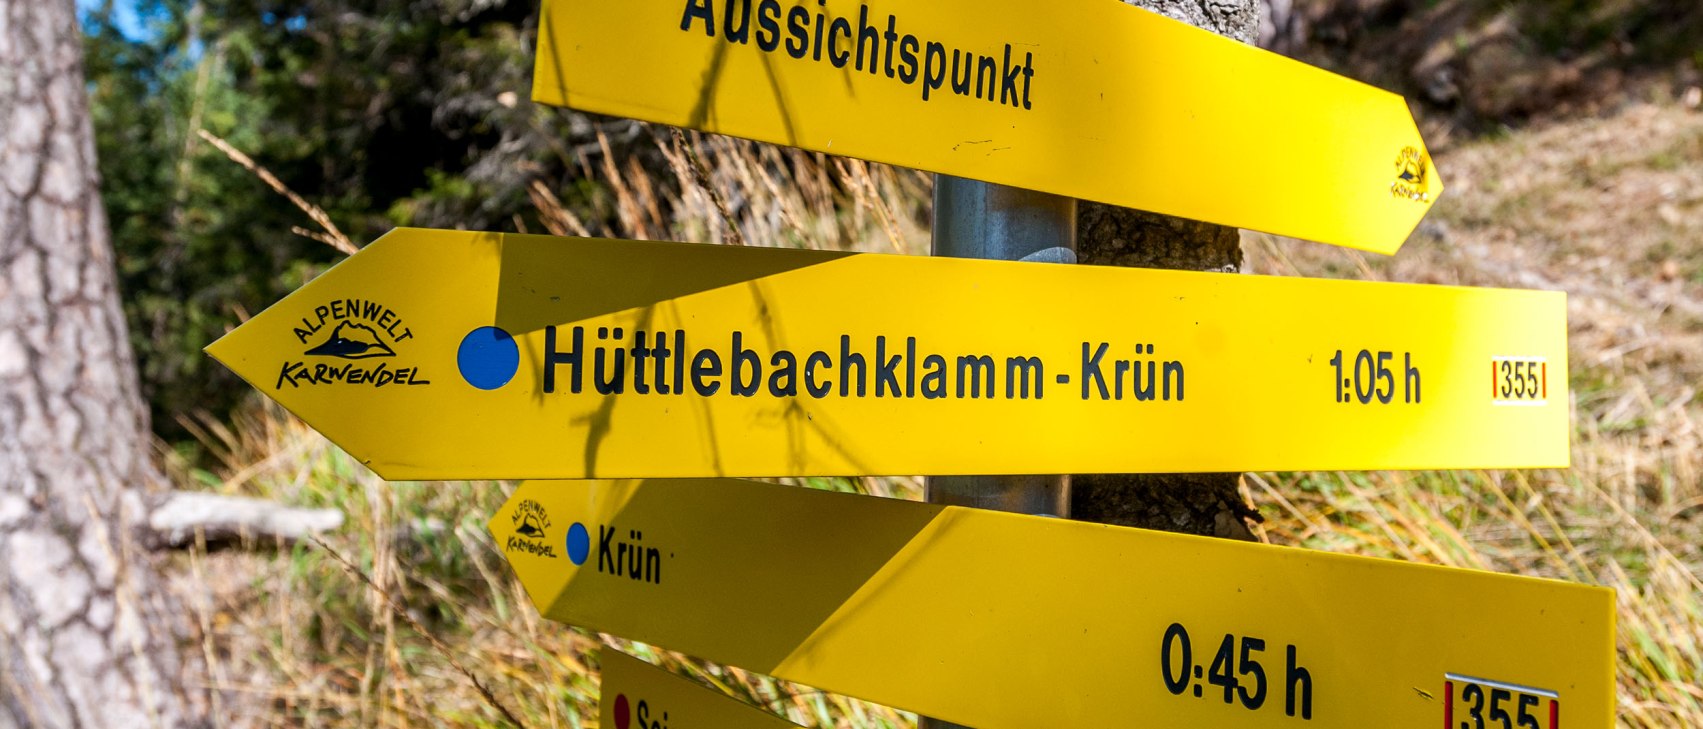 Hüttlebachklamm vom Schwarzkopf aus, © Alpenwelt Karwendel | bayern.by_Gregor Lengler